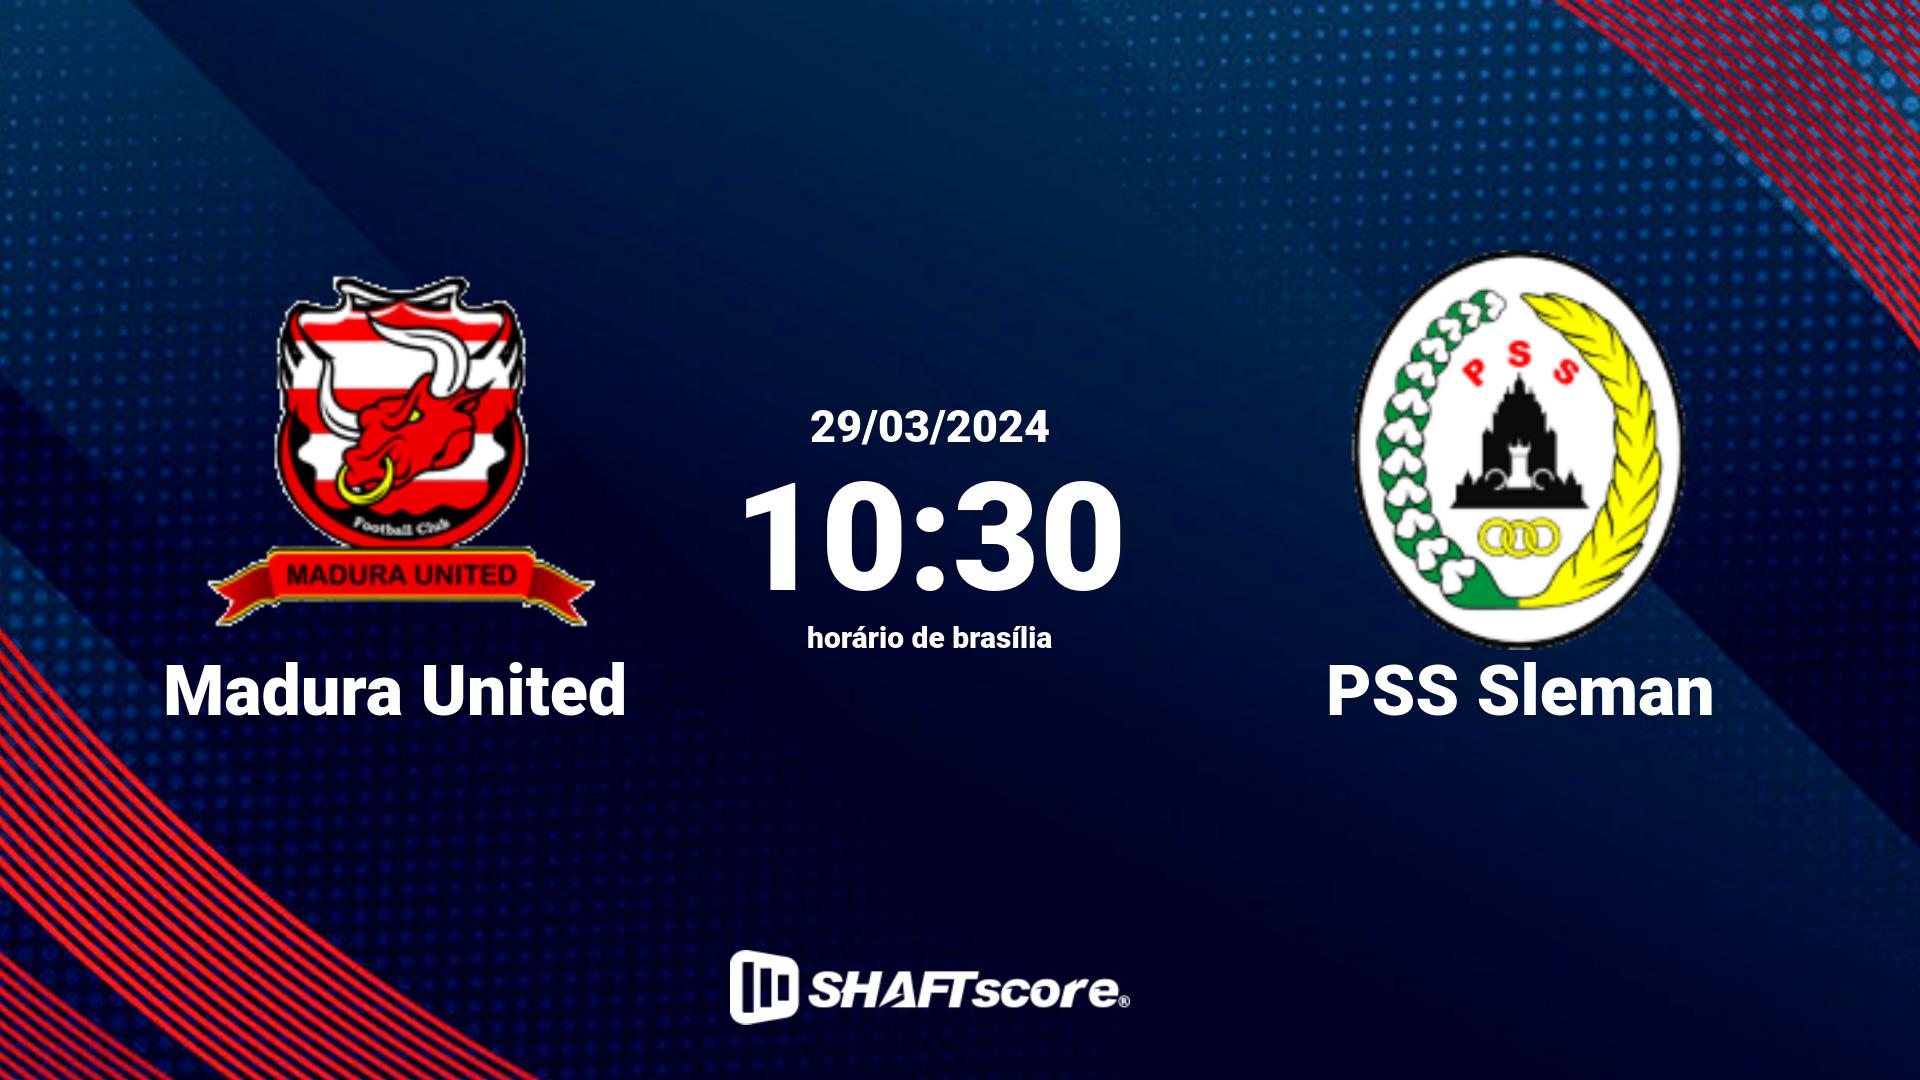 Estatísticas do jogo Madura United vs PSS Sleman 29.03 10:30